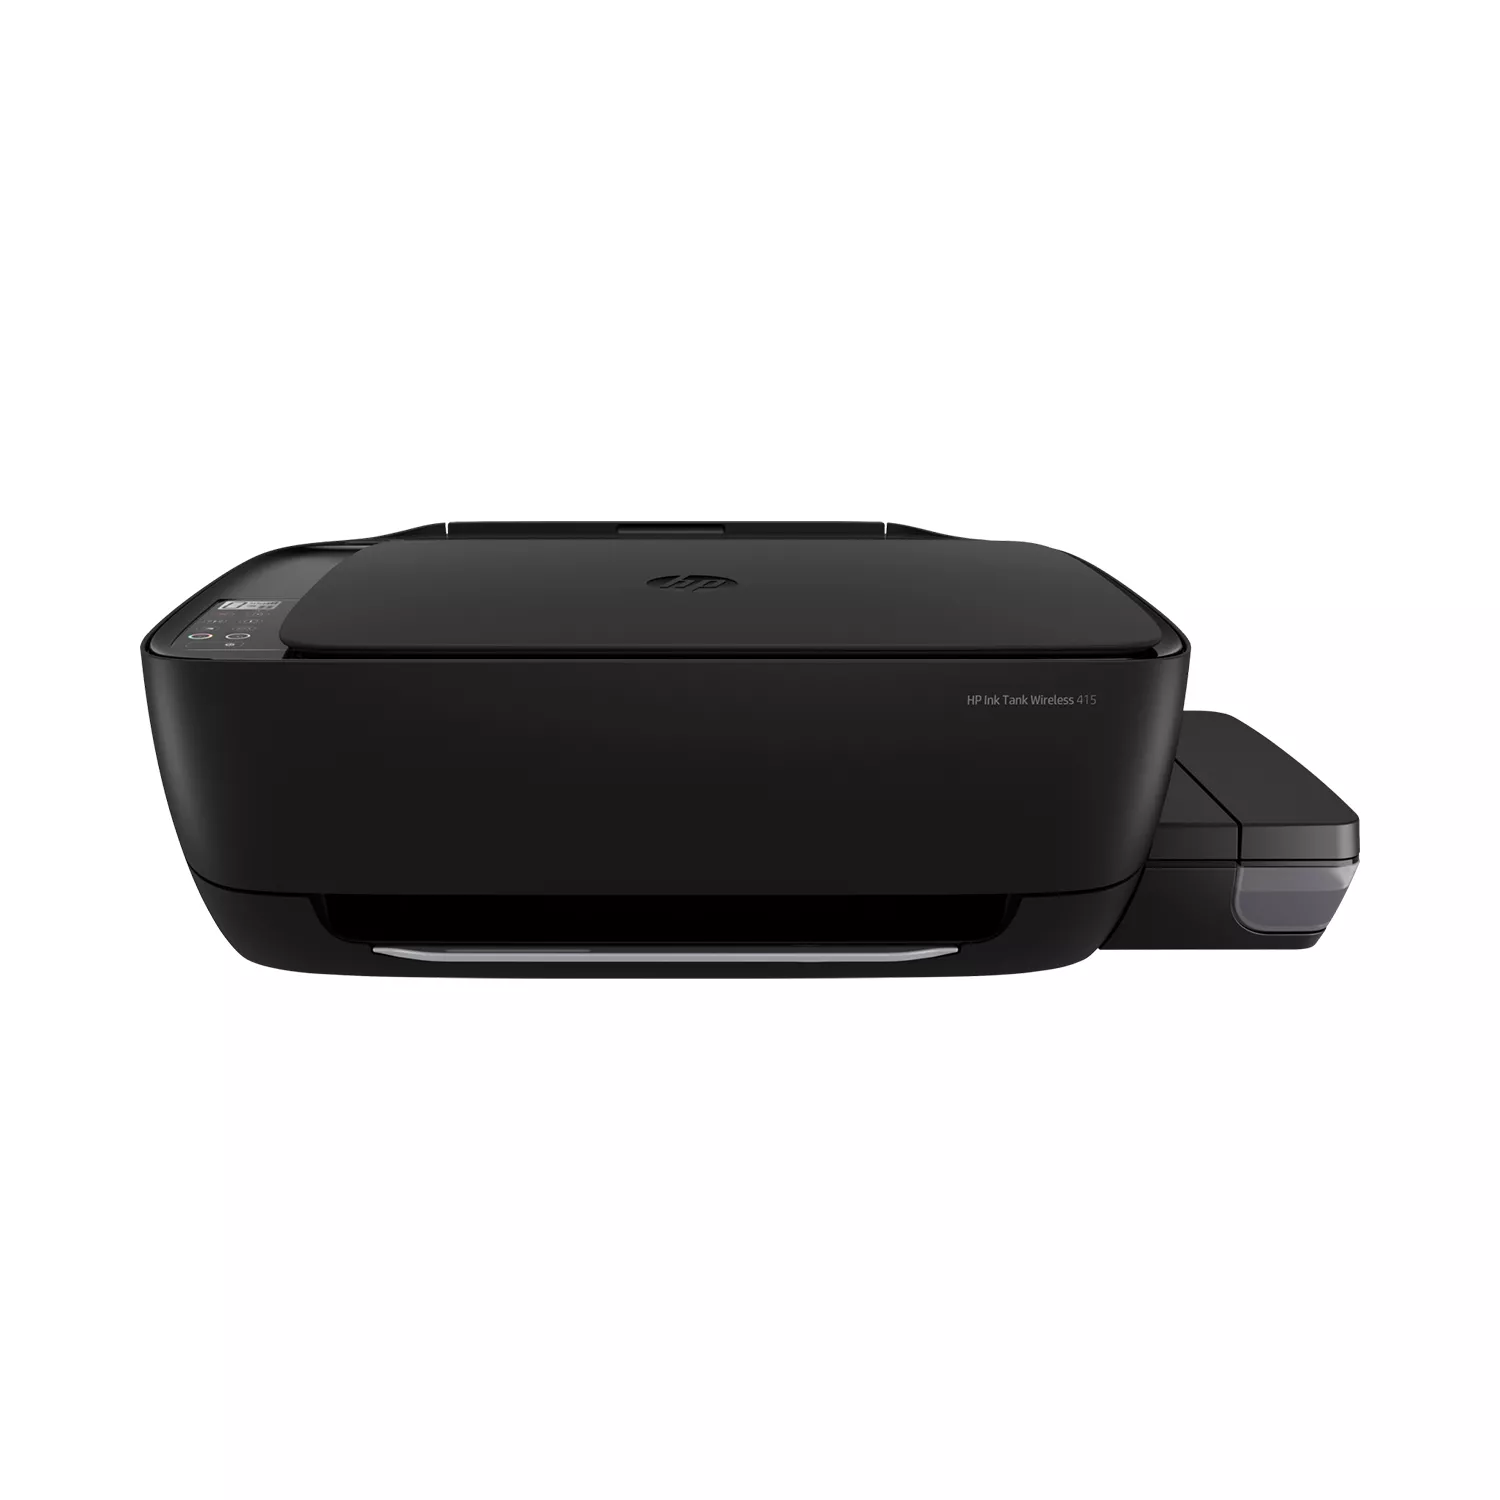 HP Ink Tank Wireless 415 Printer – ALL IT Hypermarket